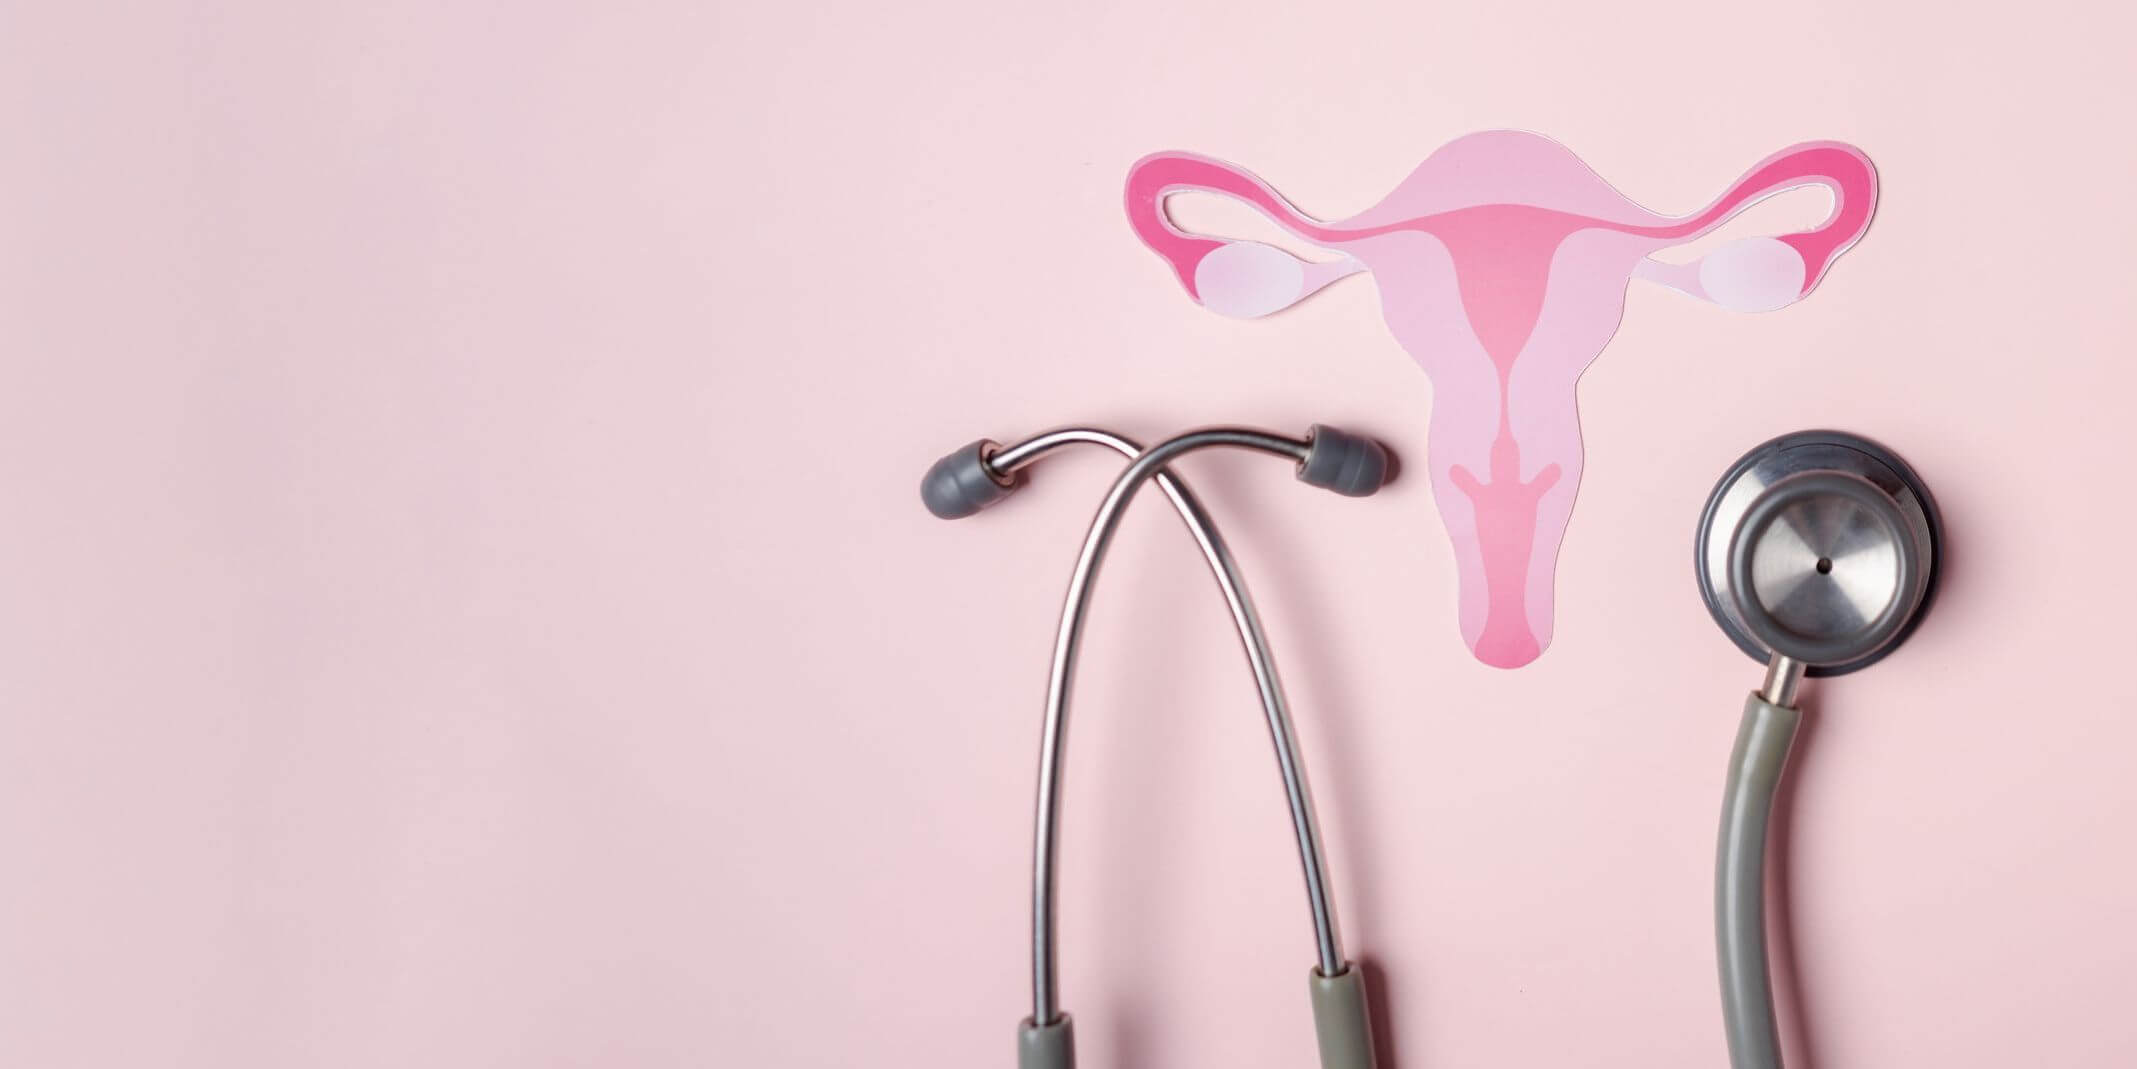 Según la Organización Mundial de la Salud (OMS), La endometriosis afecta aproximadamente a 190 millones de mujeres y niñas en edad reproductiva en todo el mundo, es decir, a cerca del 10 % de este grupo poblacional.